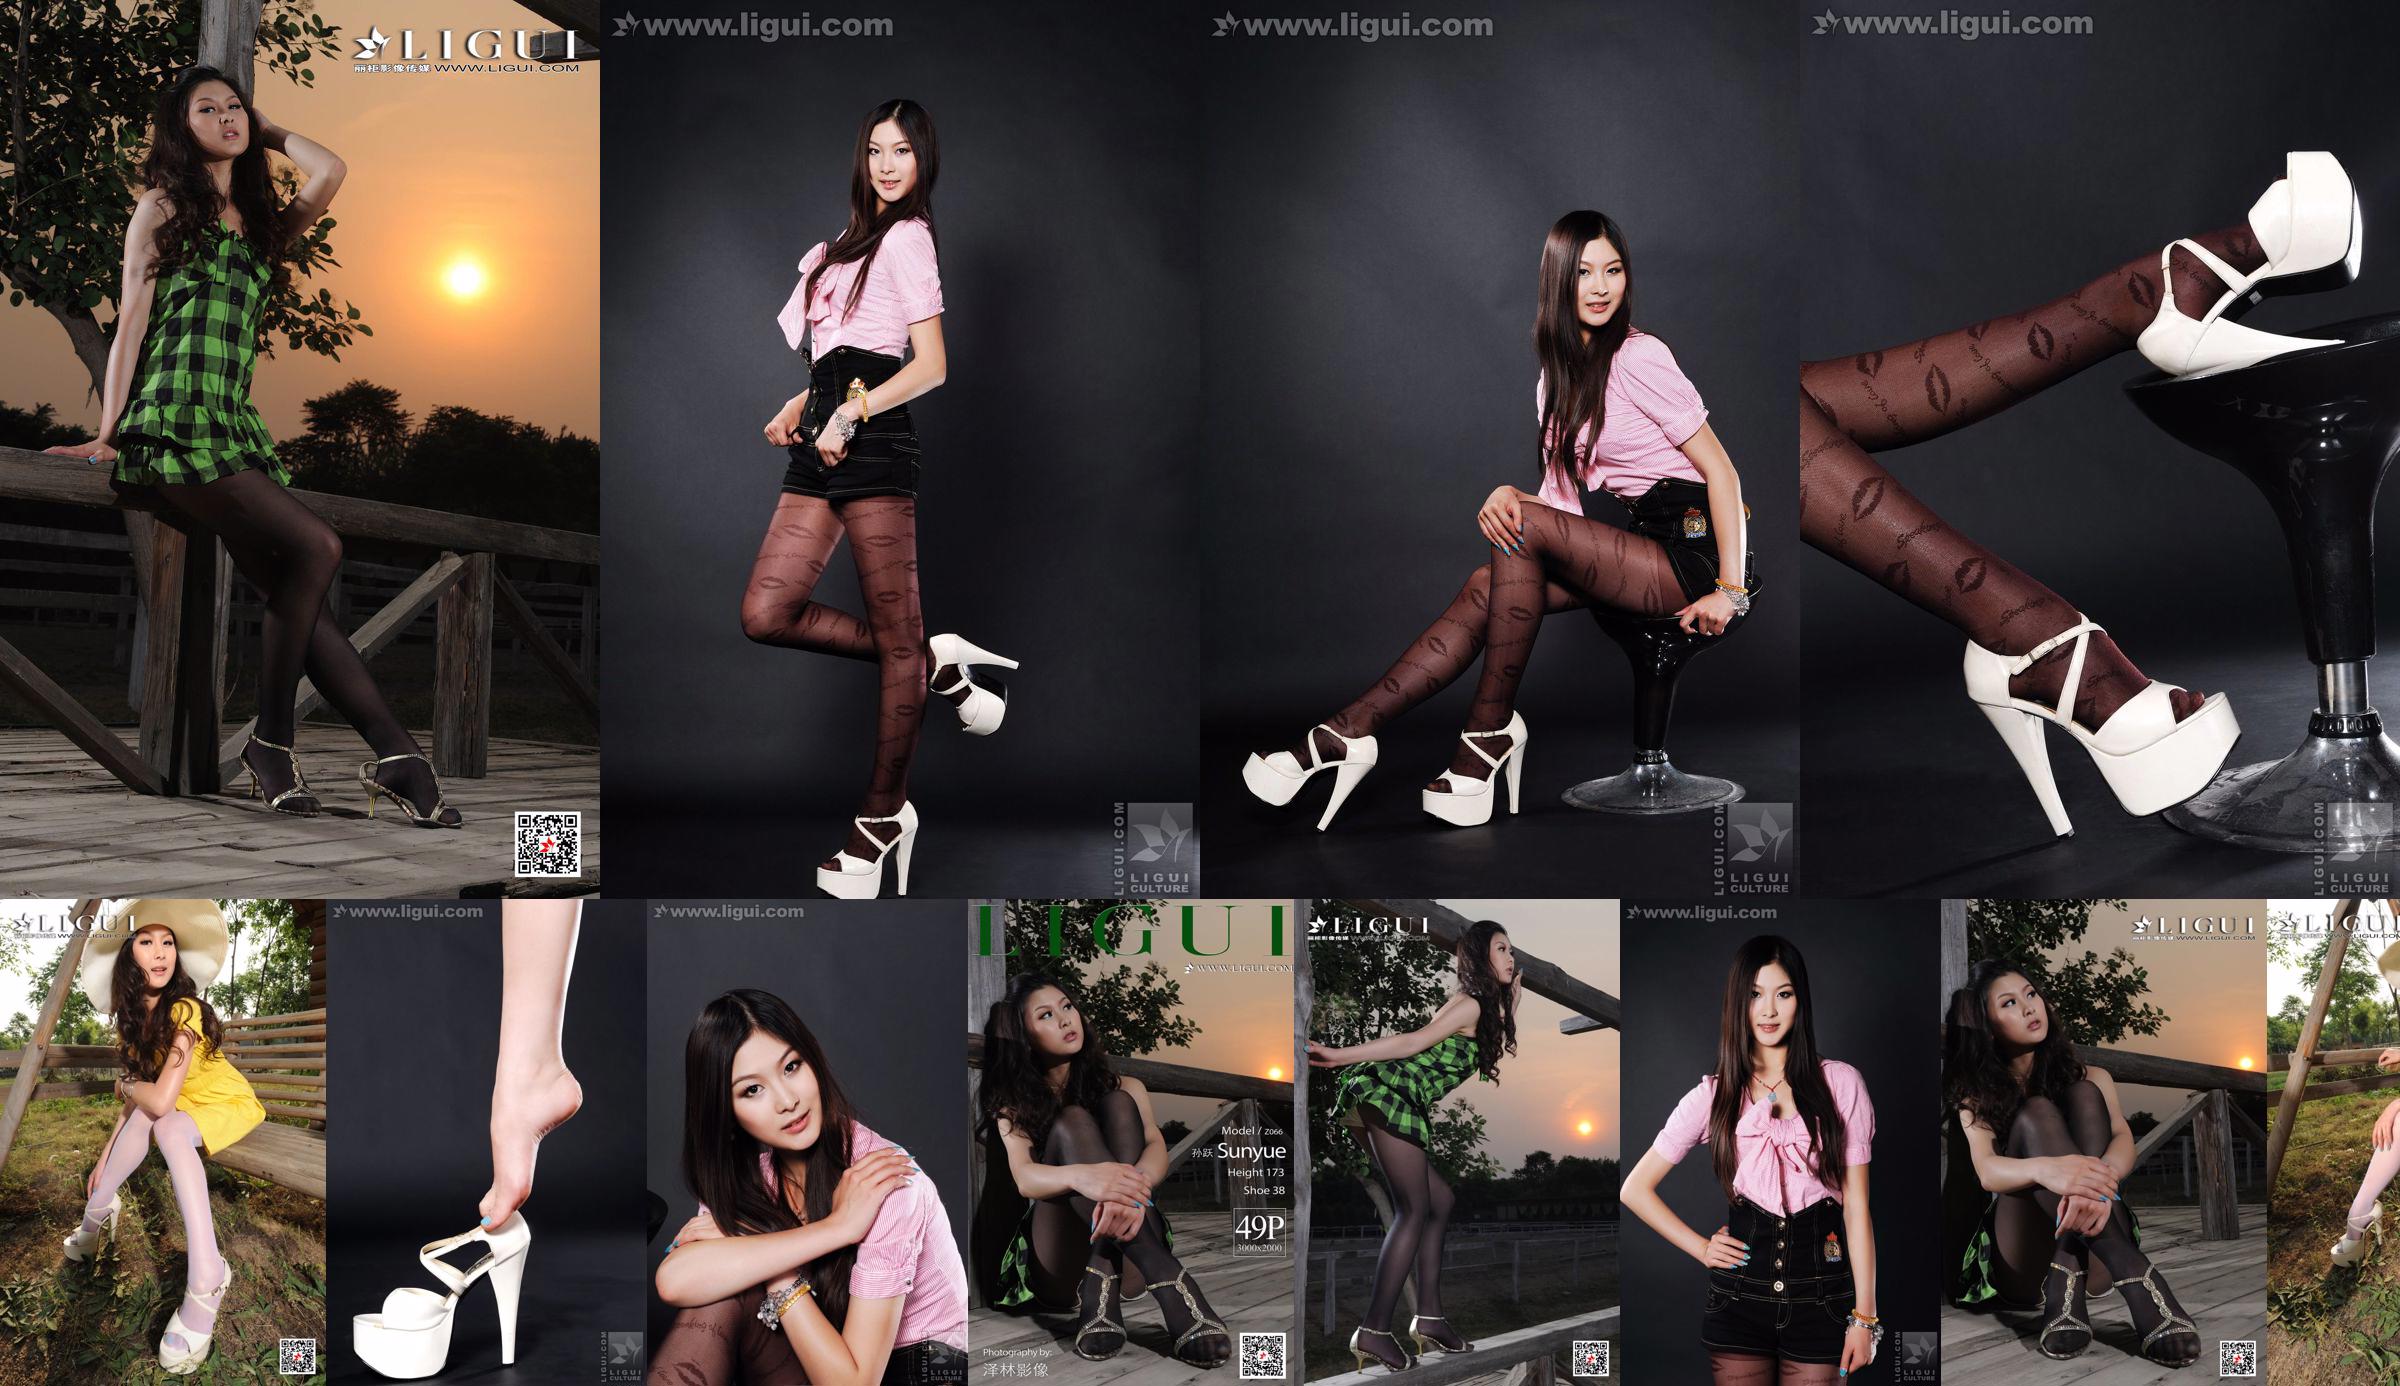 Người mẫu Sun Yue "Sexy and Glamorous Stockings" [丽 柜 LiGui] Ảnh Chân Dung Ngọc Bích và Chân Ngọc Xinh Đẹp No.b9bd65 Trang 25